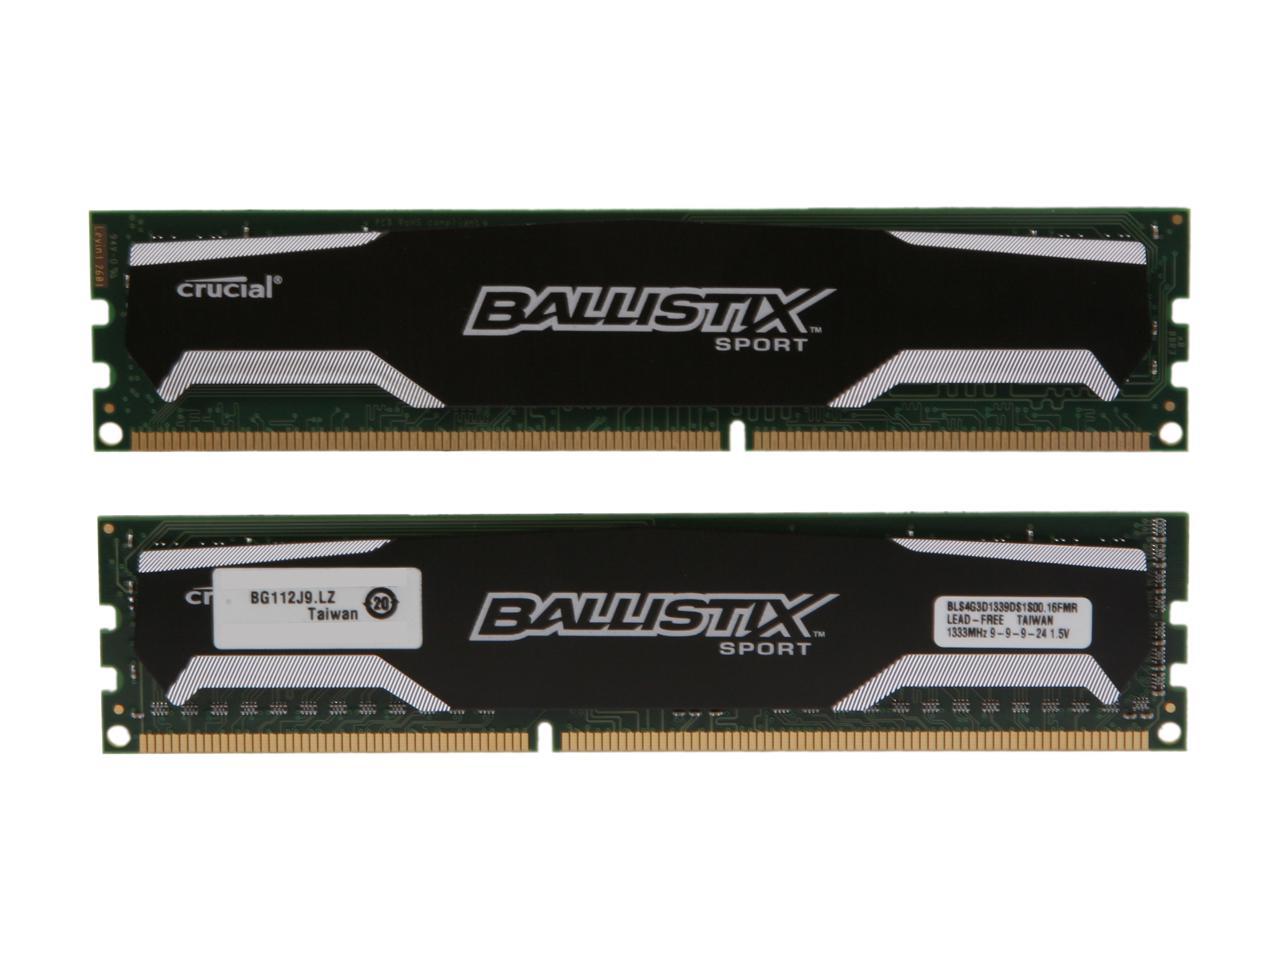 Crucial Ballistix Sport 8GB (2 x 4GB) 240-Pin DDR3 SDRAM DDR3 1333 (PC3 10600) Desktop Memory Model BLS2KIT4G3D1339DS1S00